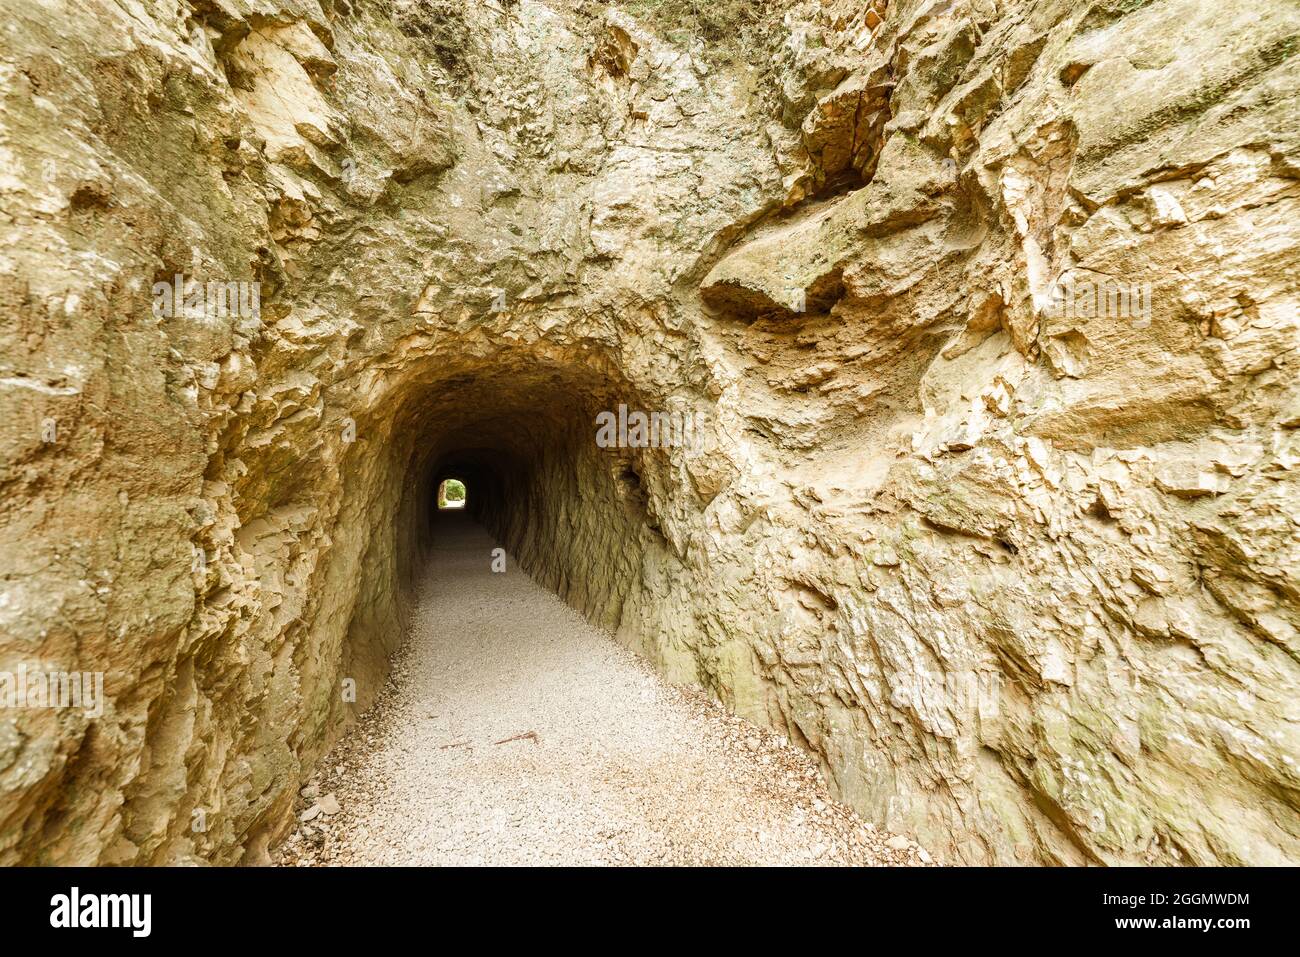 Tunnel d'un aqueduc romain sculpté dans le rocher d'une montagne Banque D'Images